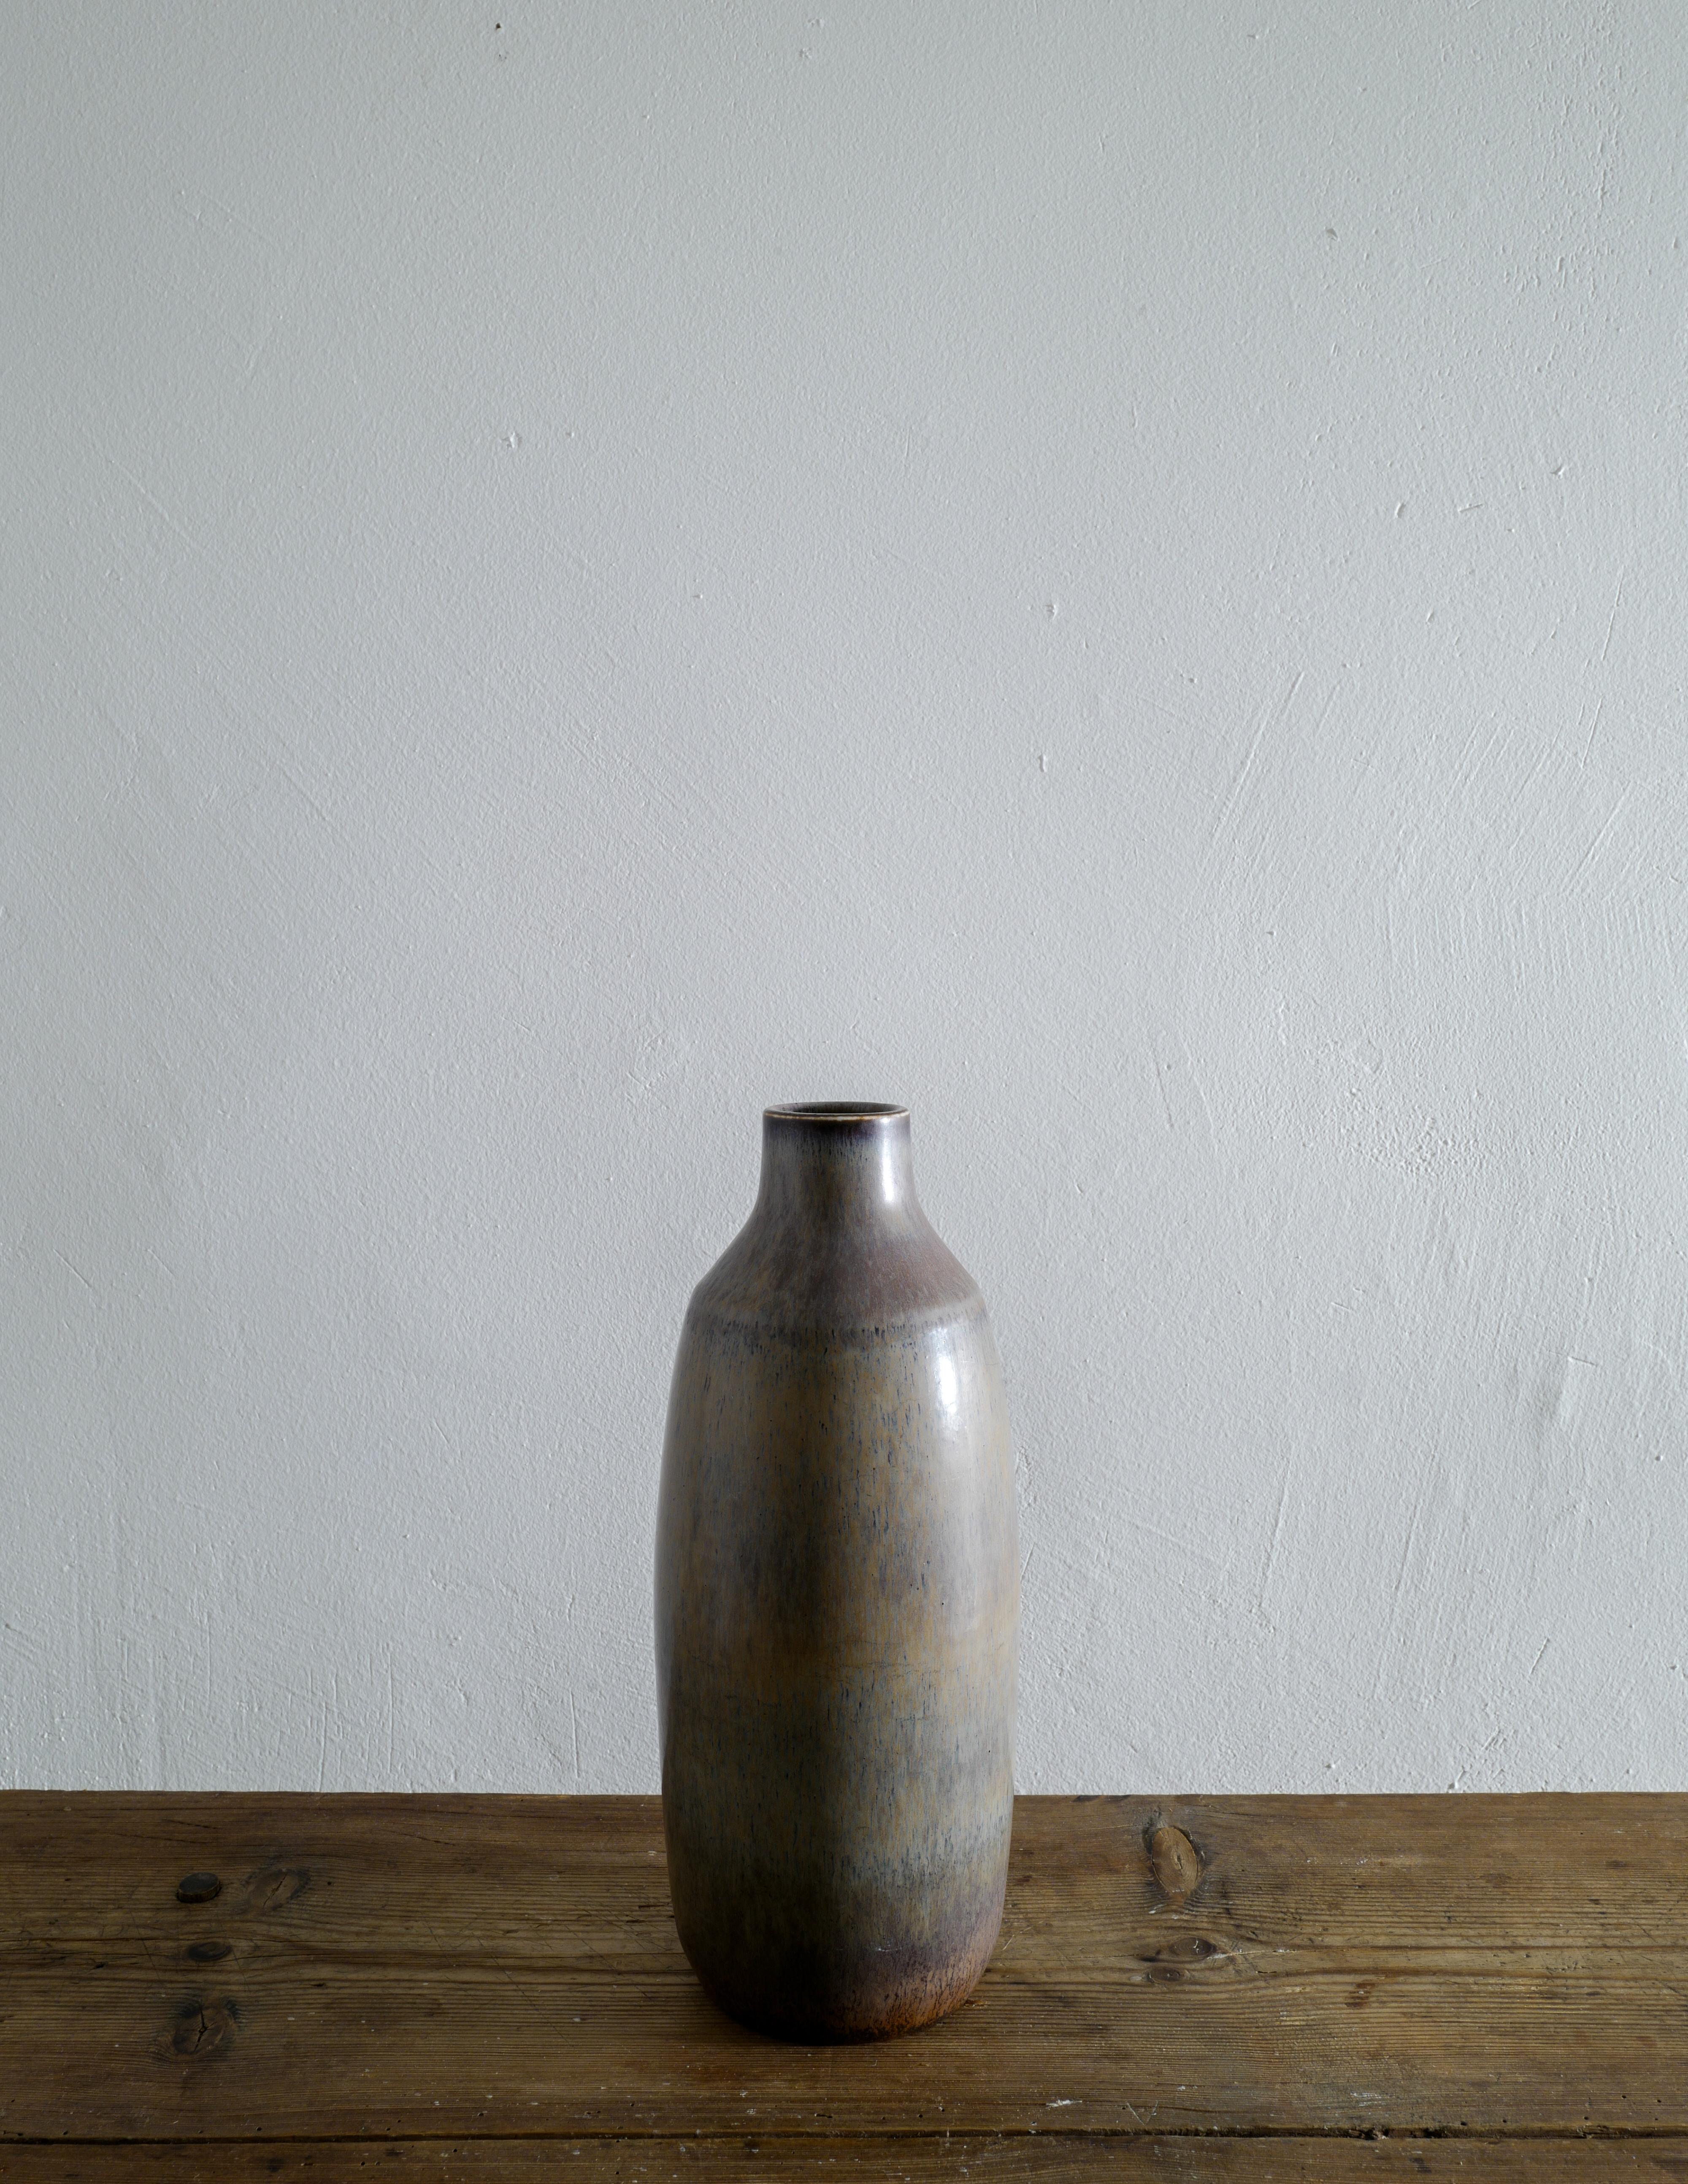 Seltene Carl-Harry Stålhane Vase in einer grau/braun/grünen Glasur in tollem Vintage-Zustand mit kleinen Alters- und Gebrauchsspuren. Hergestellt in Schweden für Rörstrand in den 1950er Jahren. Unterschrieben. 

Höhe: 34 cm 
Durchmesser: 14 cm